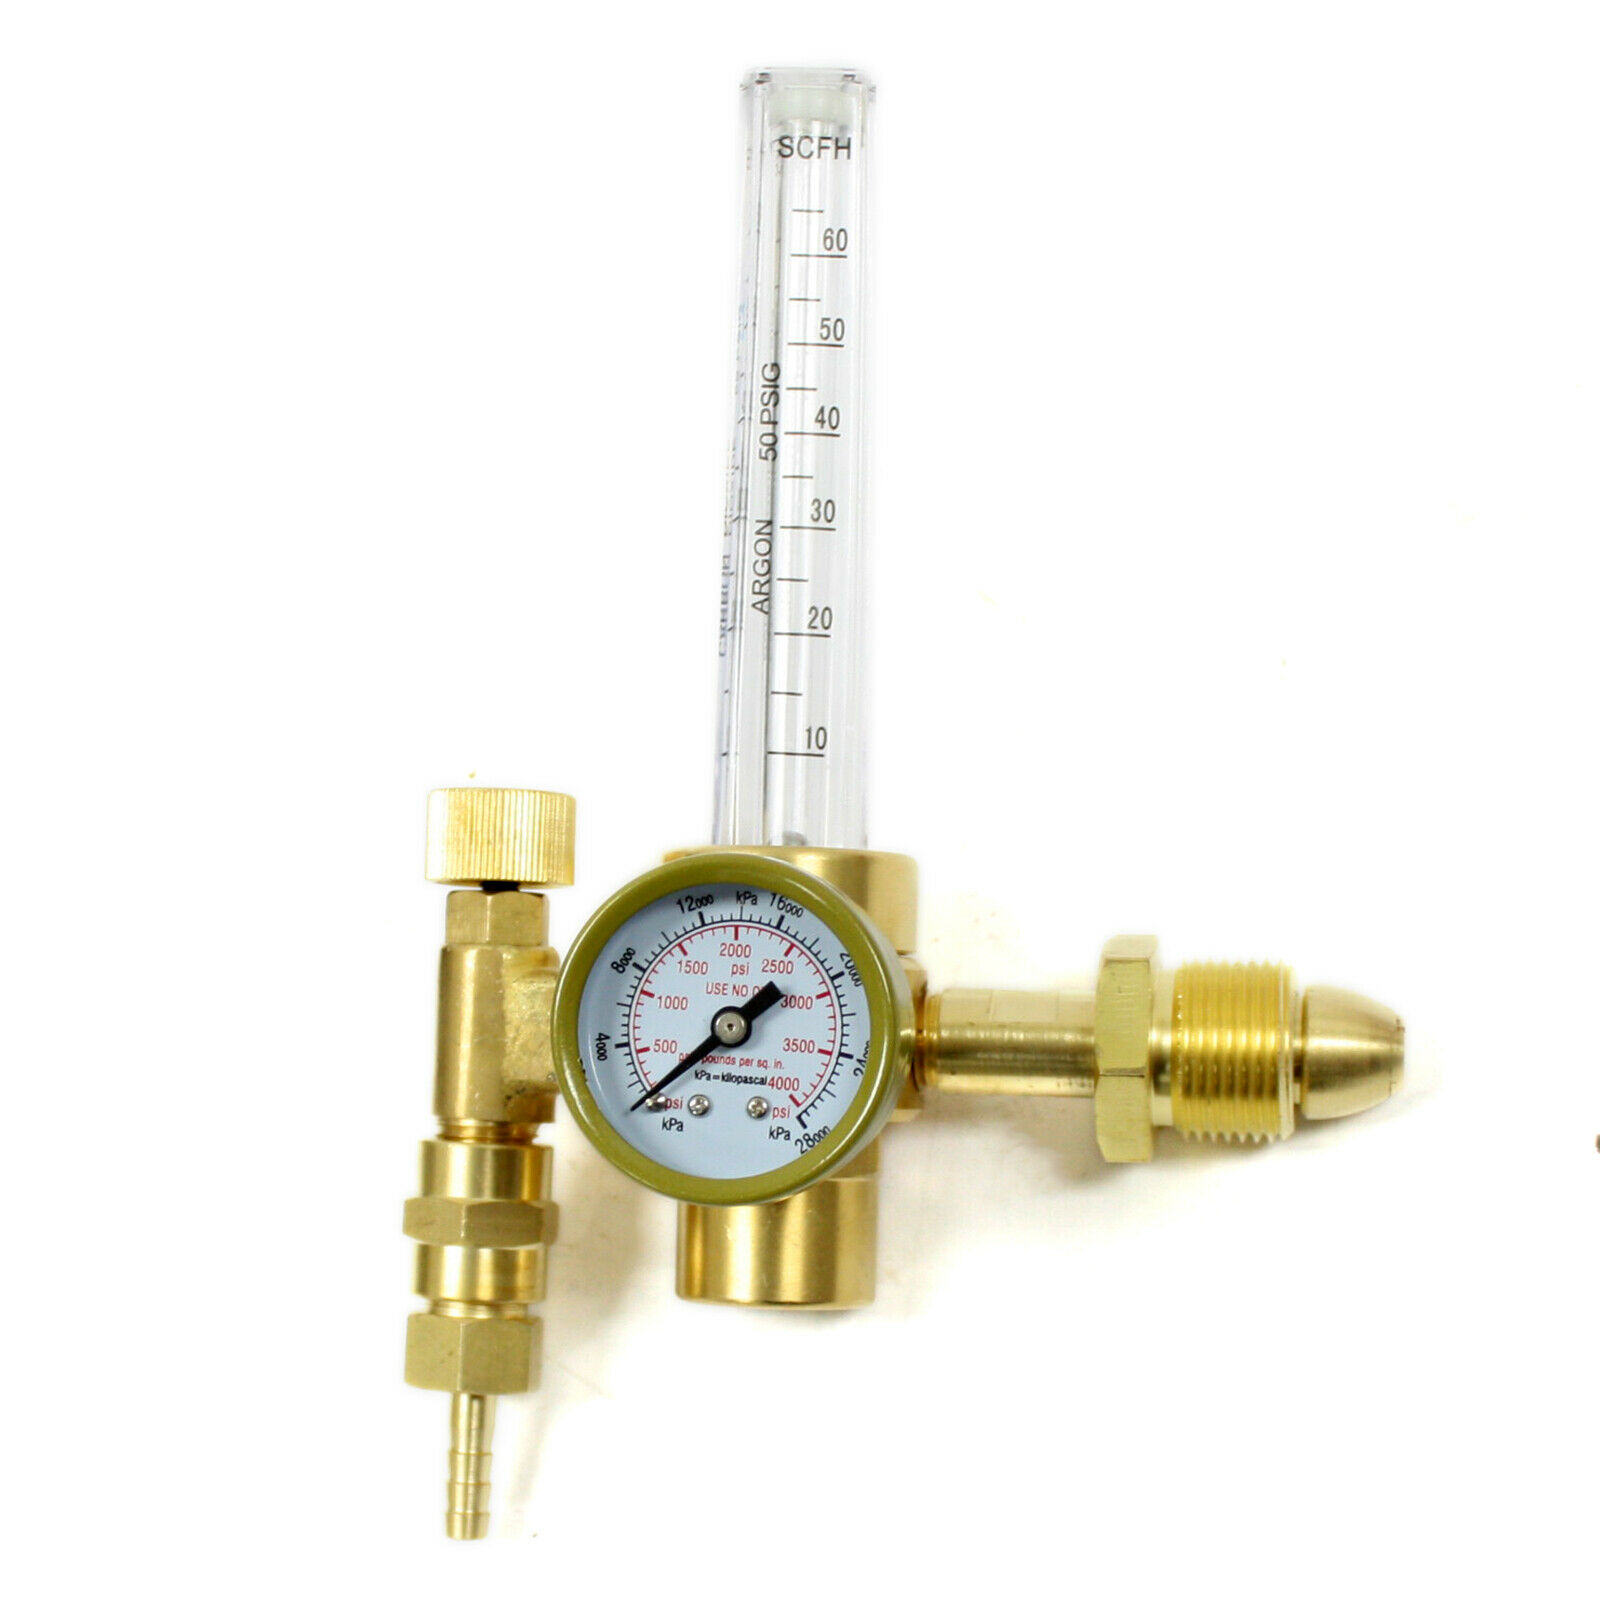 CGA-580 Argon CO2 Mig Tig Flow Meter Regulator Welding Flowmeter 4000PSI w/ Hose 